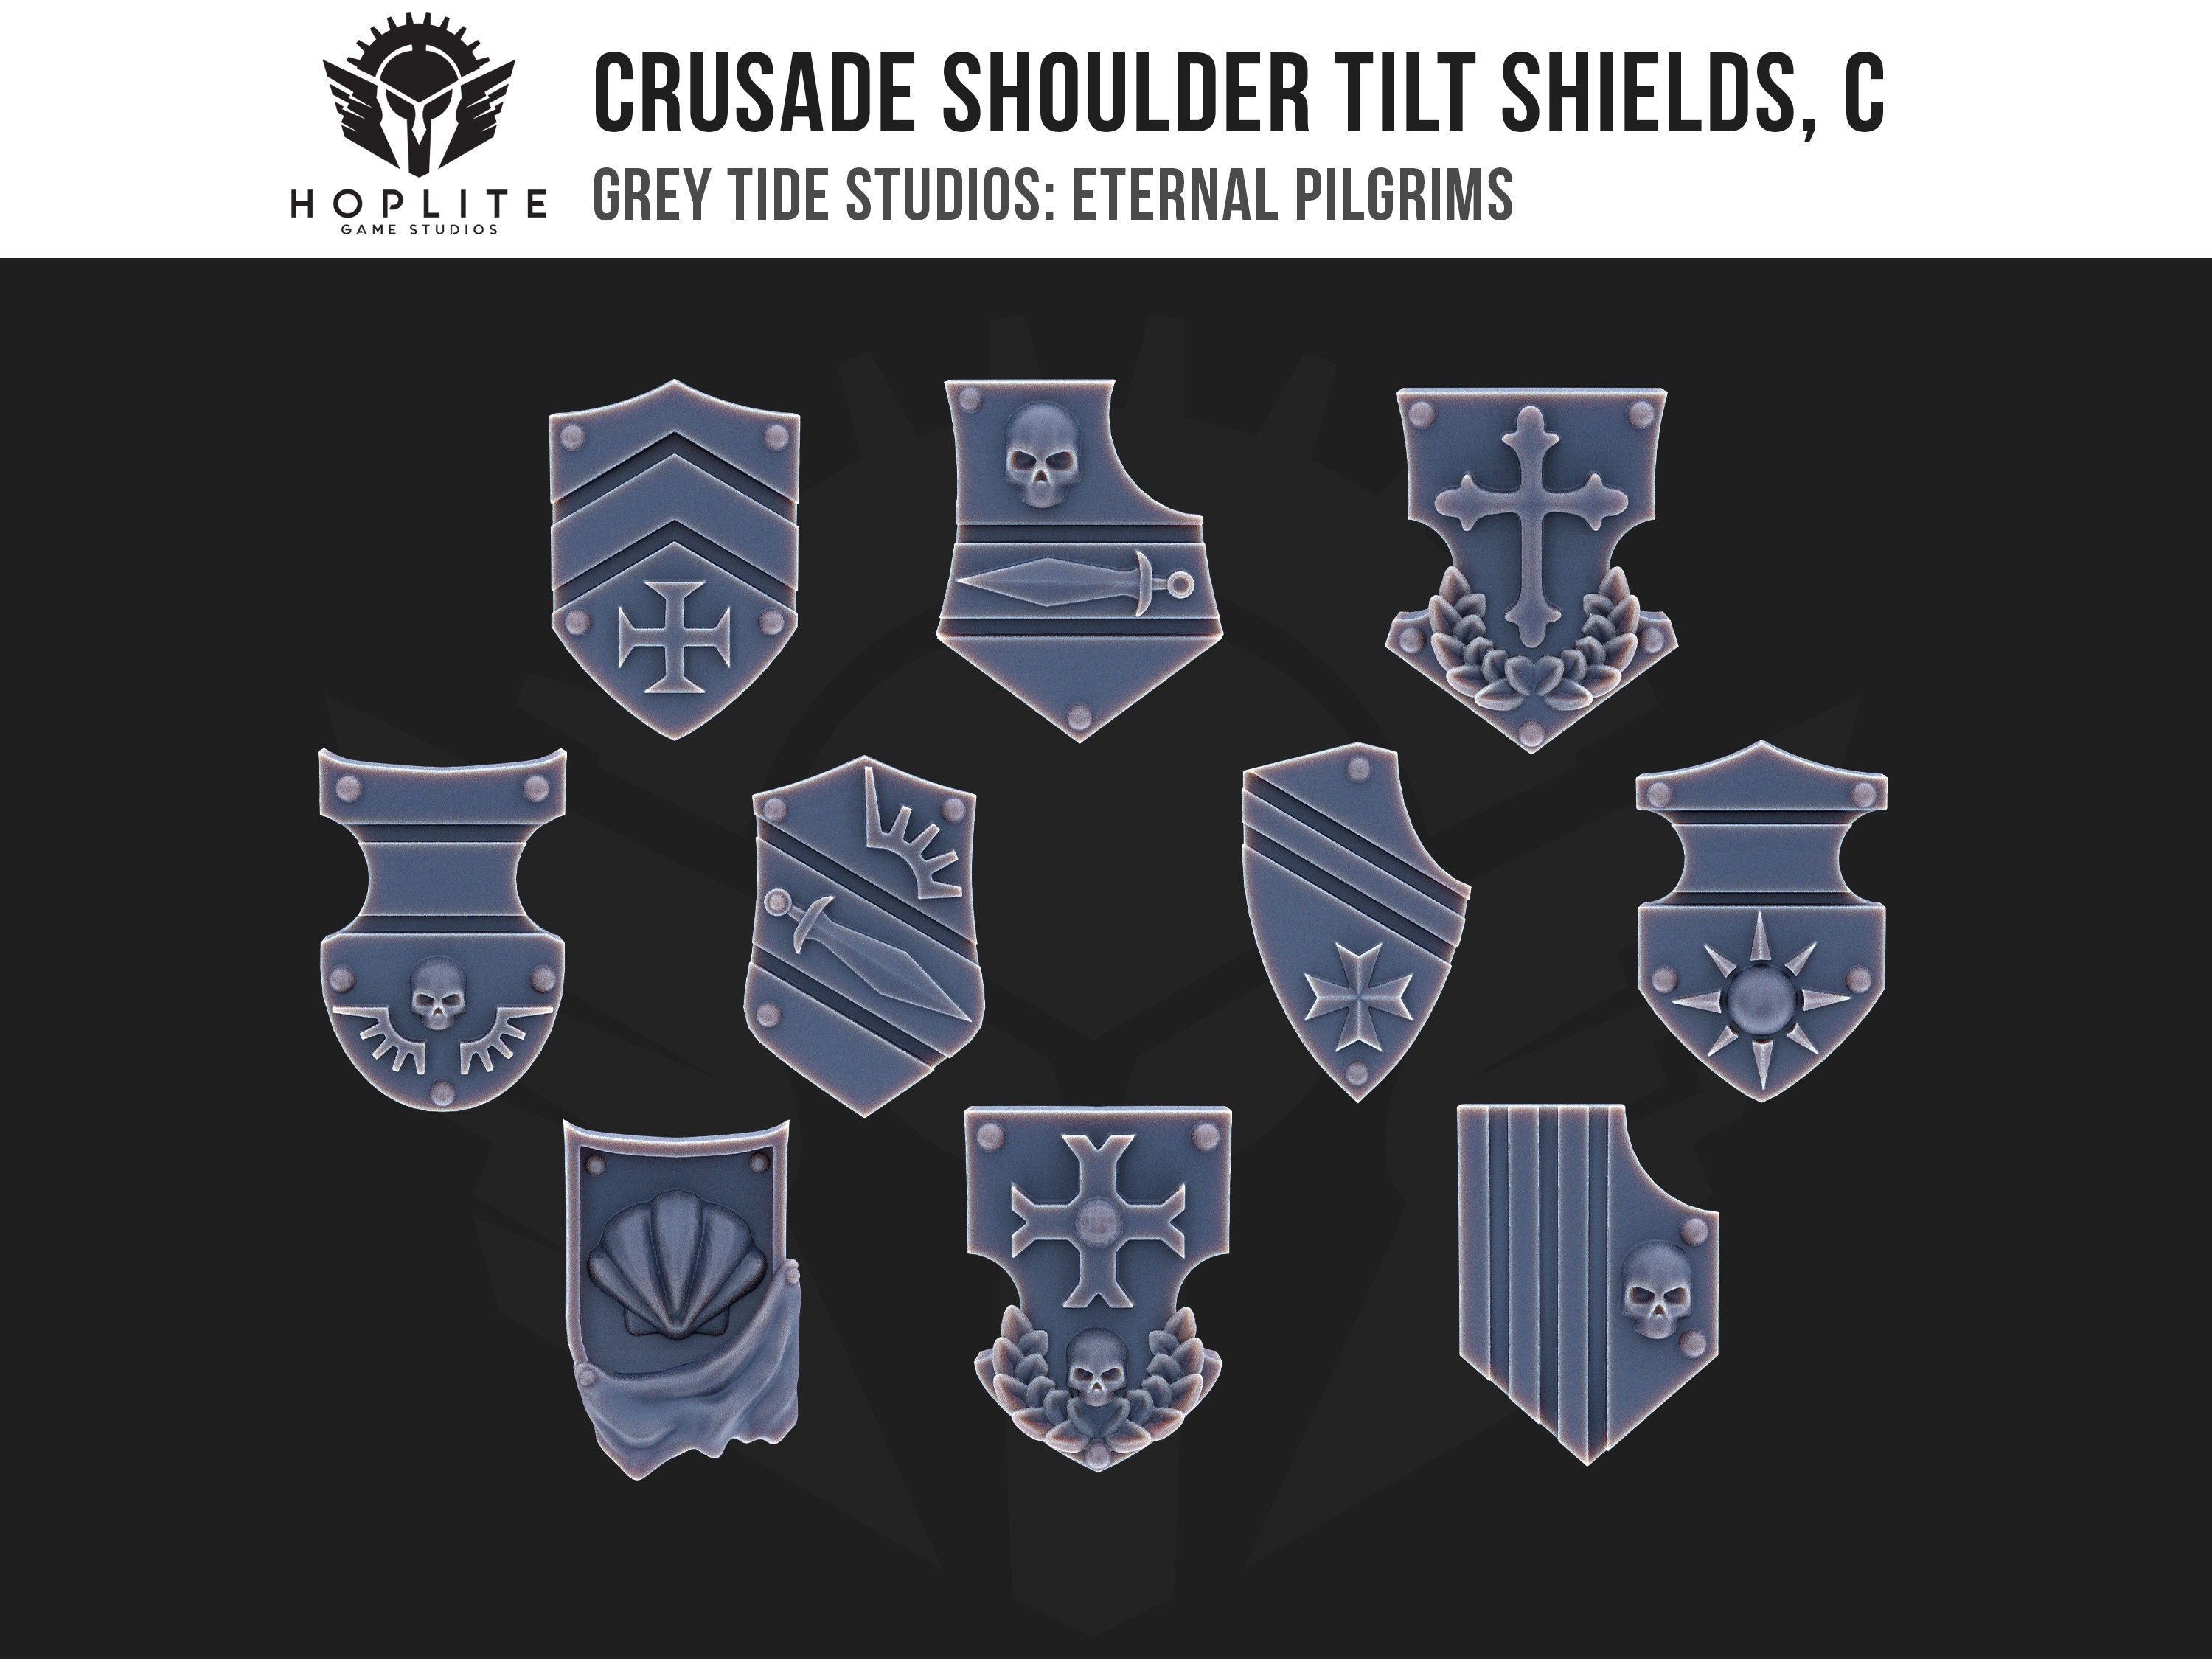 Escudos de inclinación de hombros de Cruzada, C (x10) | Estudios de marea gris | Peregrinos eternos | Piezas y brocas de conversión